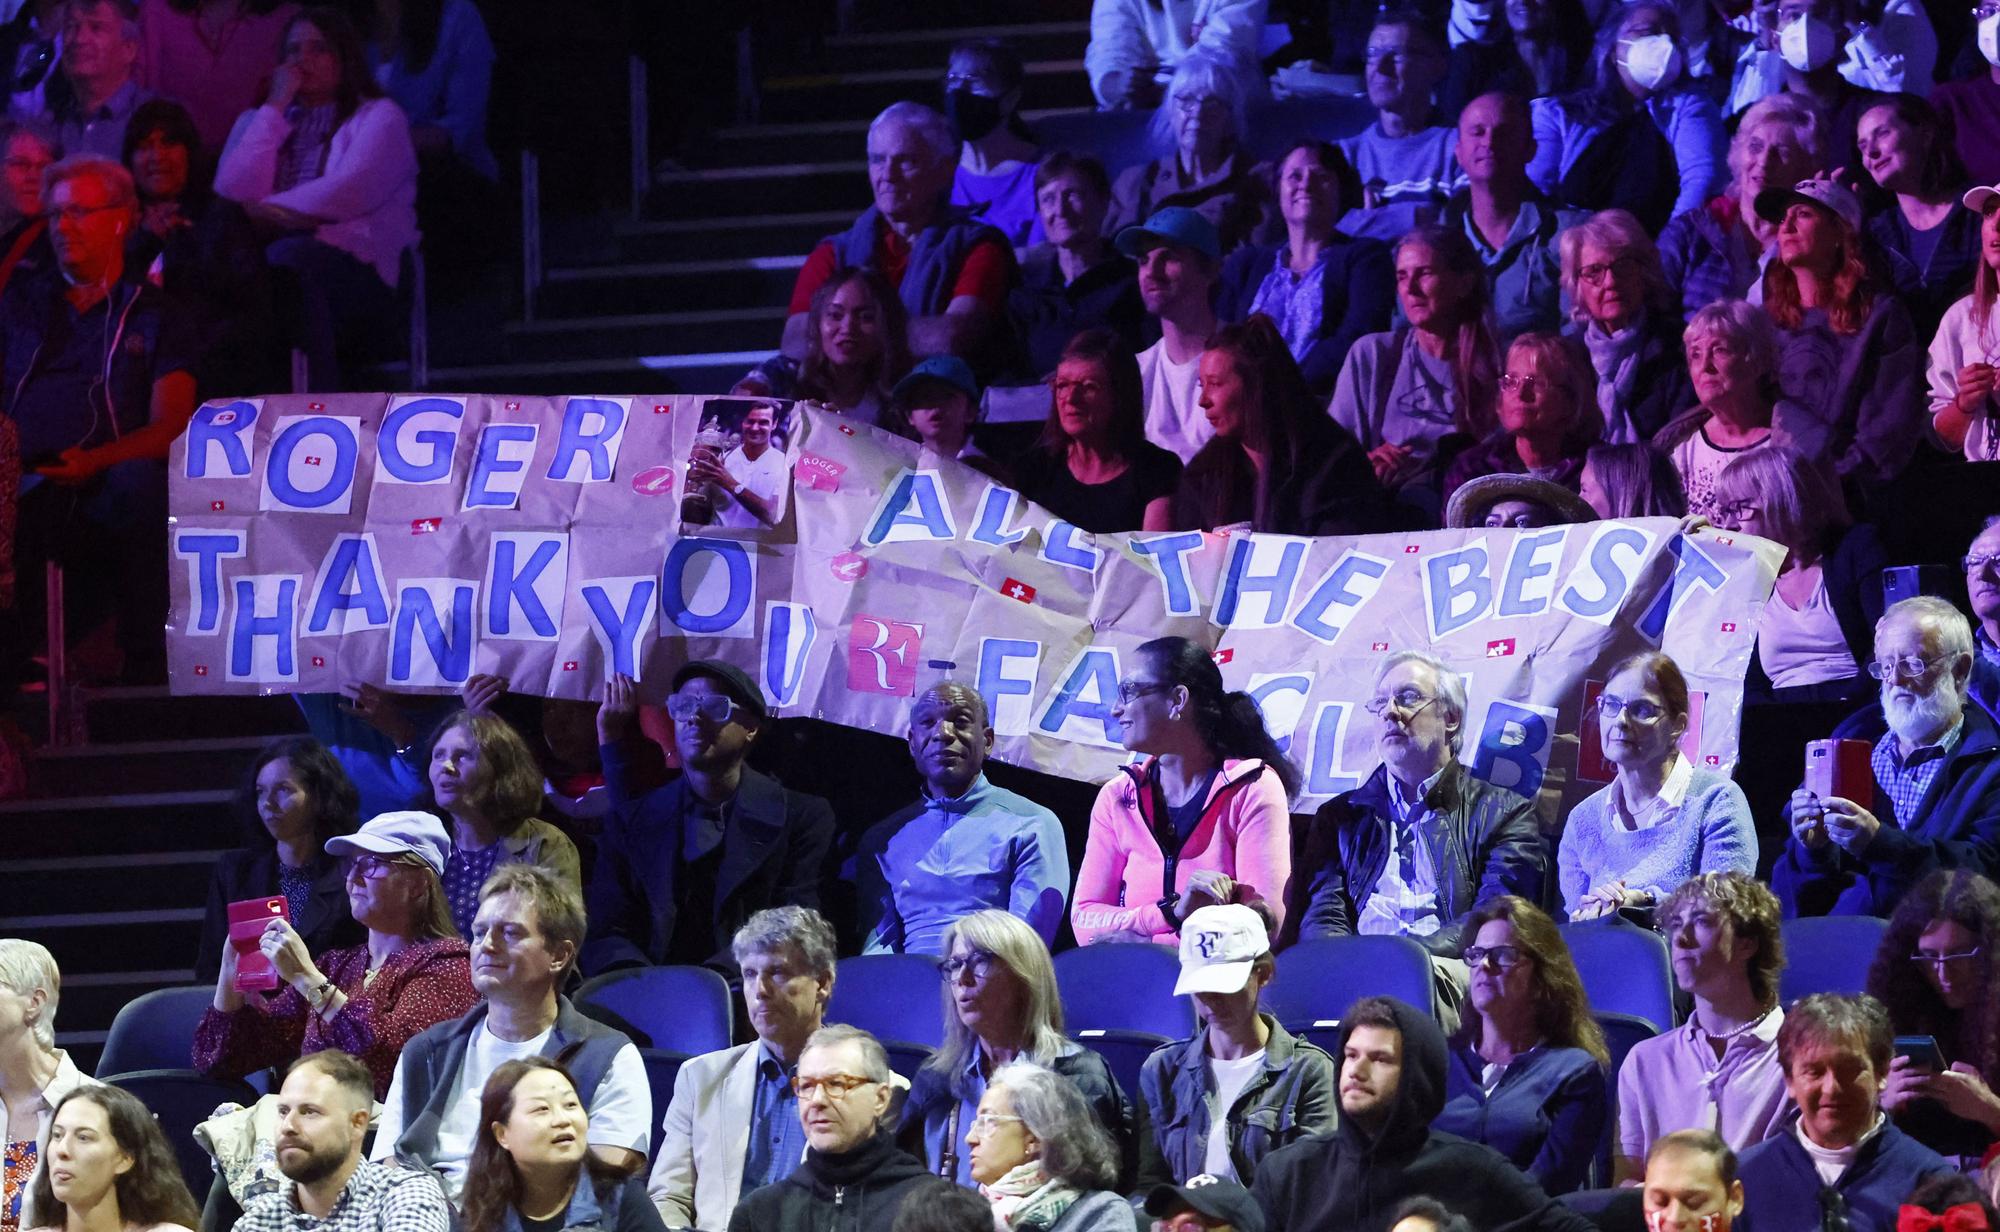 Primeras imágenes del reencuentro de Nadal y Federer en la Laver Cup 2022